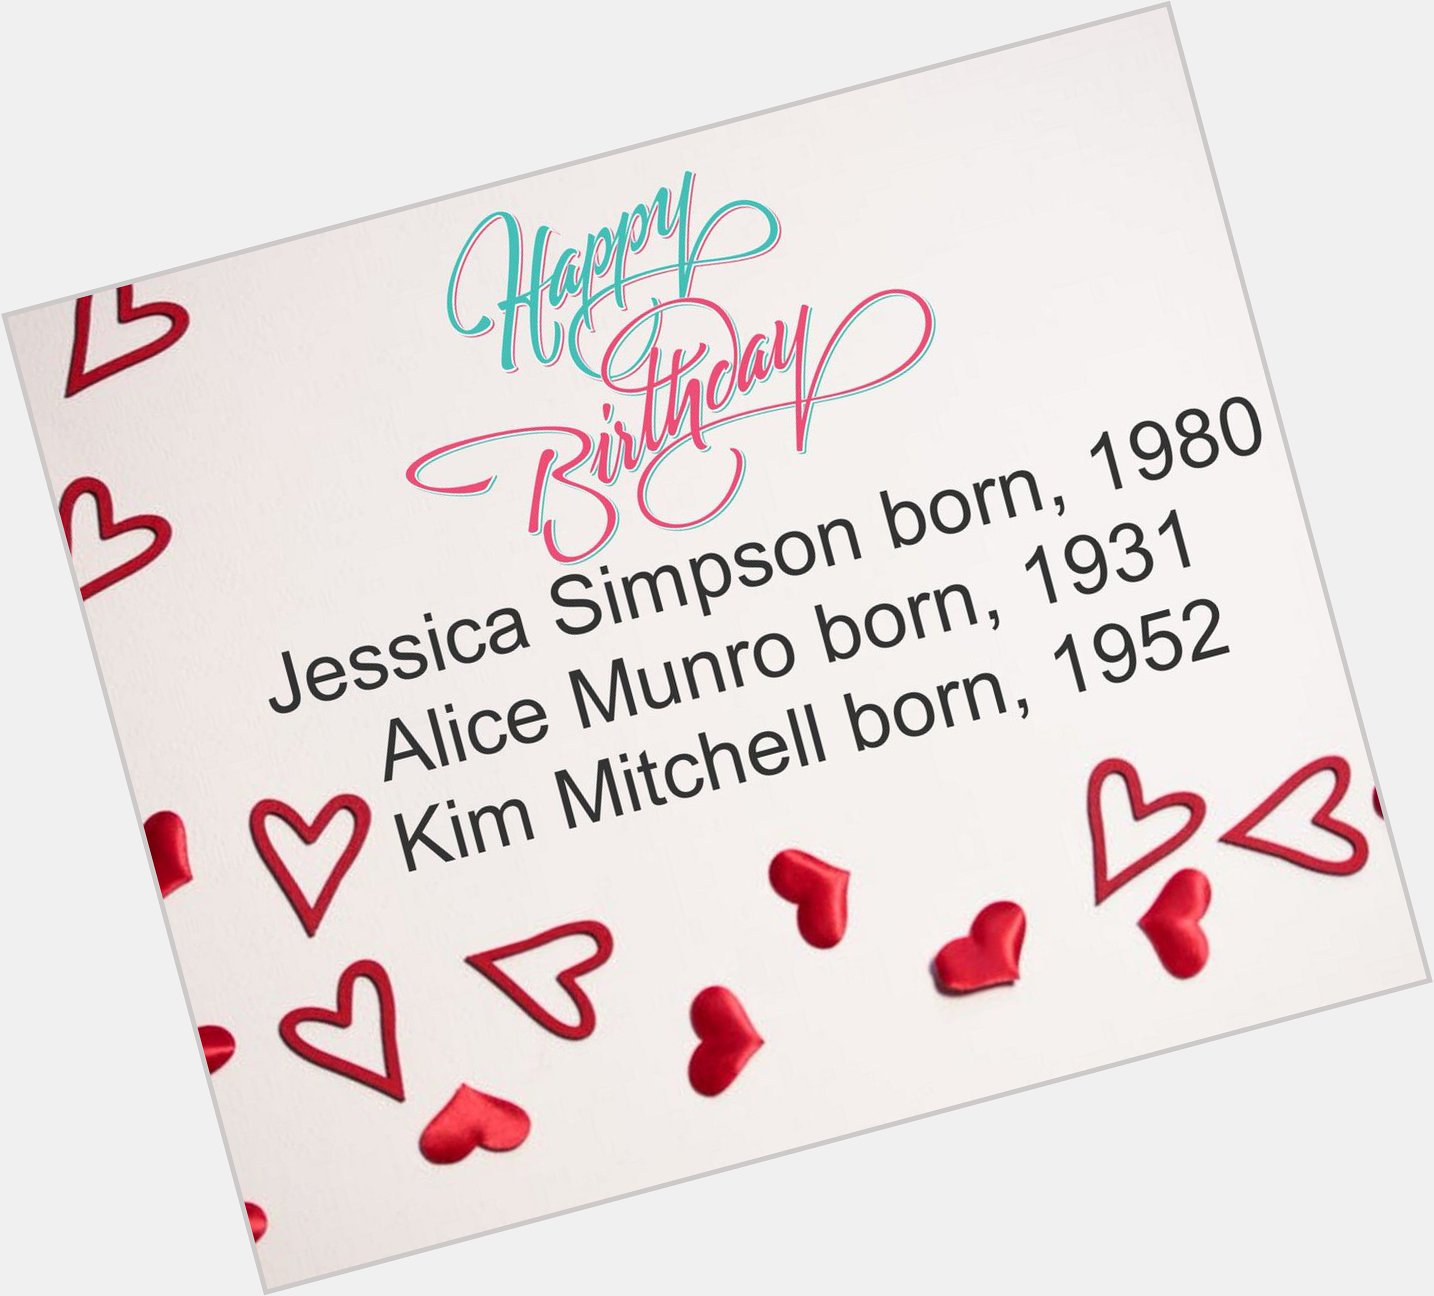 Happy Birthday!
Jessica Simpson born, 1980
Alice Munro born, 1931
Kim Mitchell born, 1952 